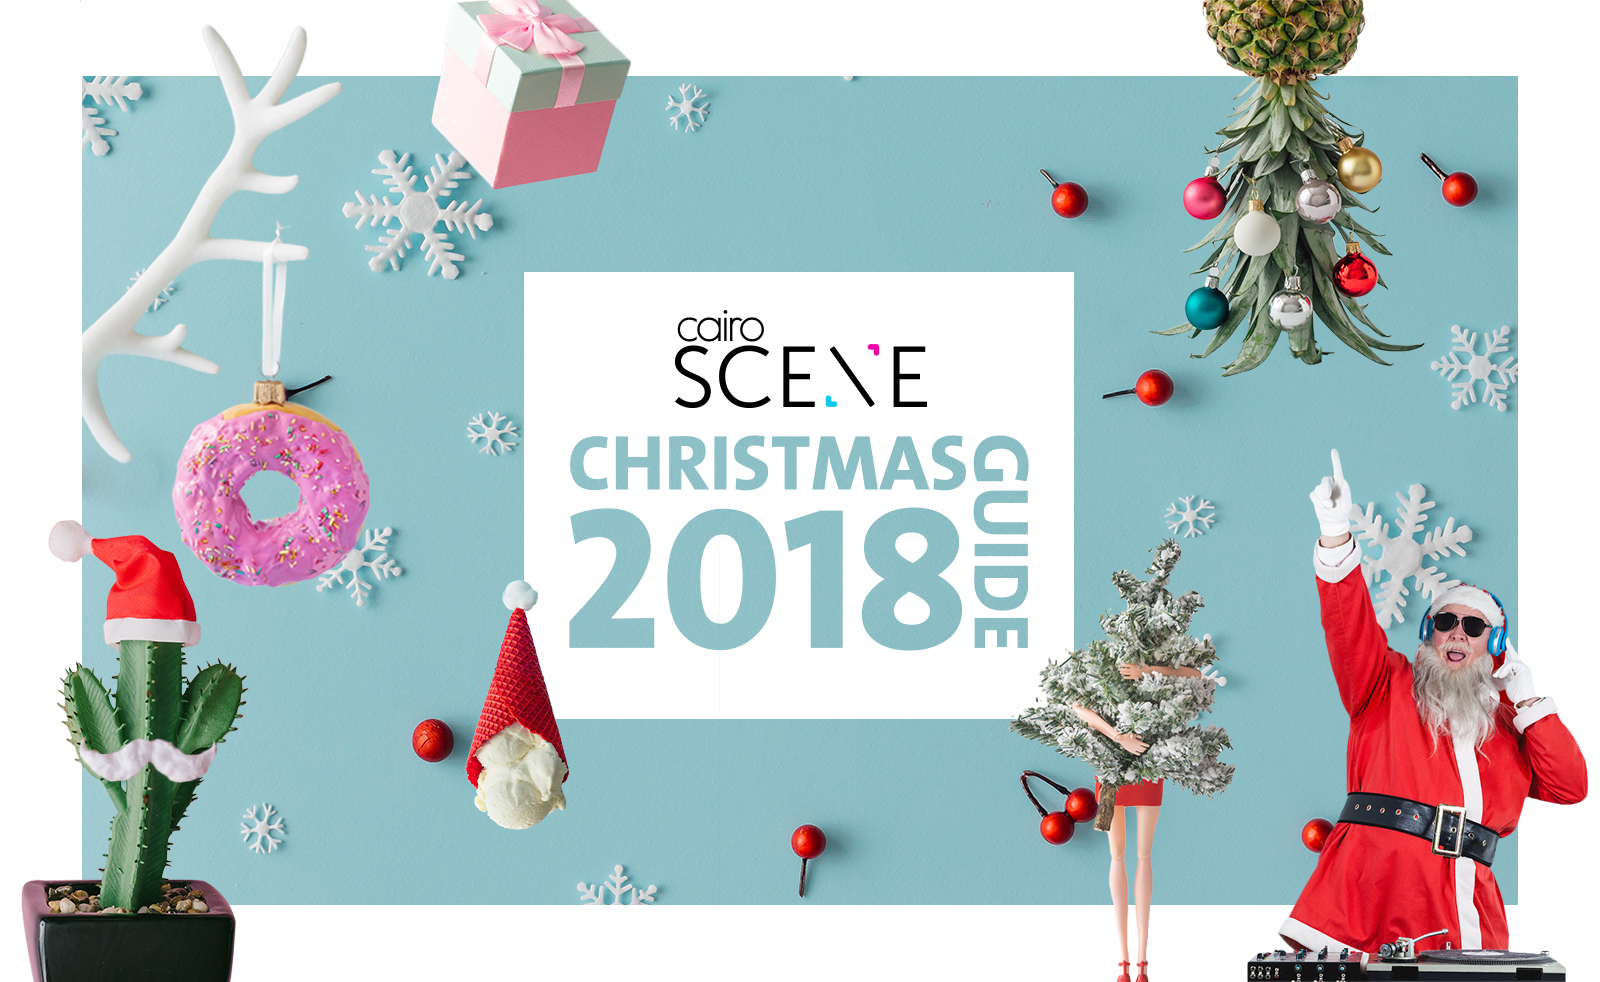 CairoScene Christmas Guide 2018